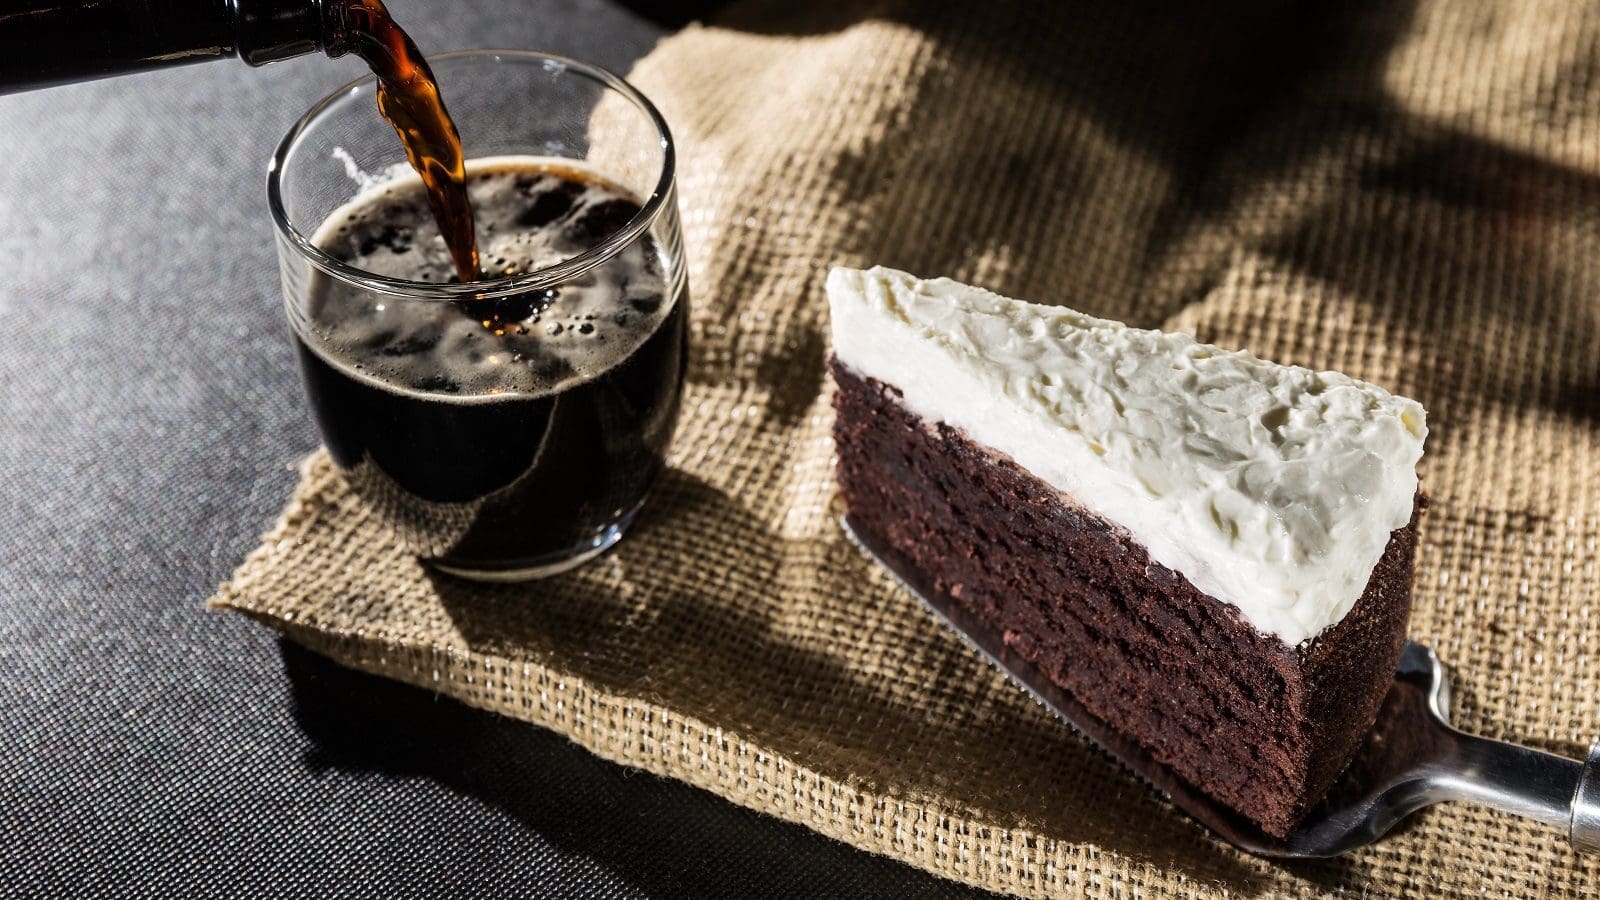 Ein Stück Guinness-Cake auf einem Kuchenheber neben einem Glas, in das gerade Guinness eingegossen wird, beides auf einem groben, braunen Tuch vor einem dunklen Hintergrund.